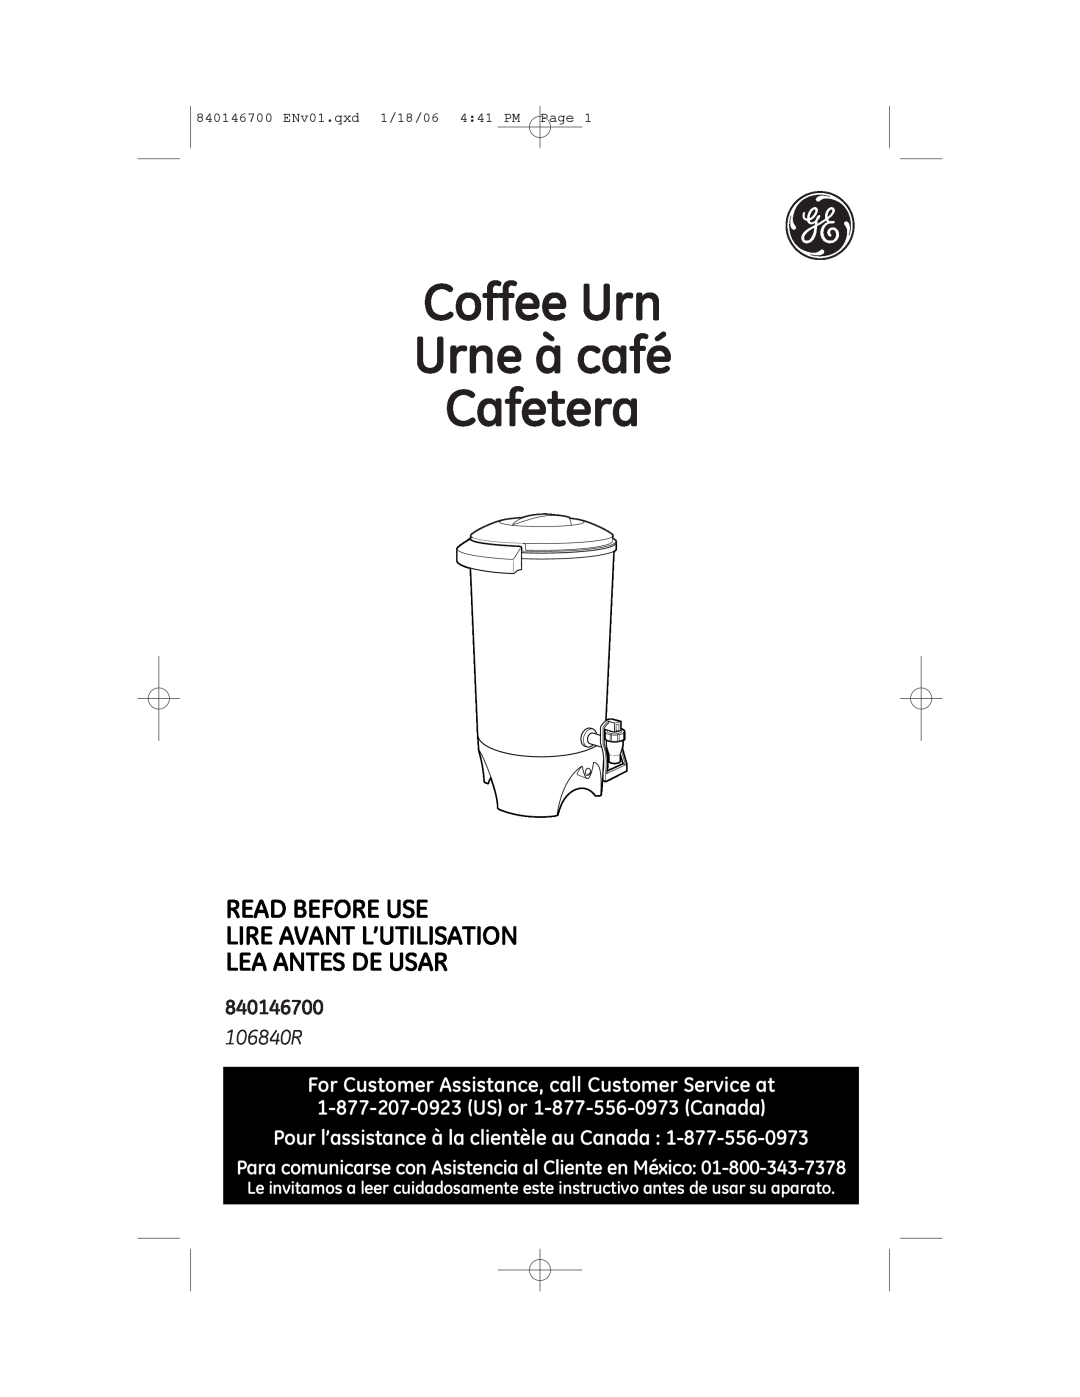 GE 106840 manual 840146700, Coffee Urn Urne à café Cafetera, Read Before Use Lire Avant L’Utilisation, Lea Antes De Usar 